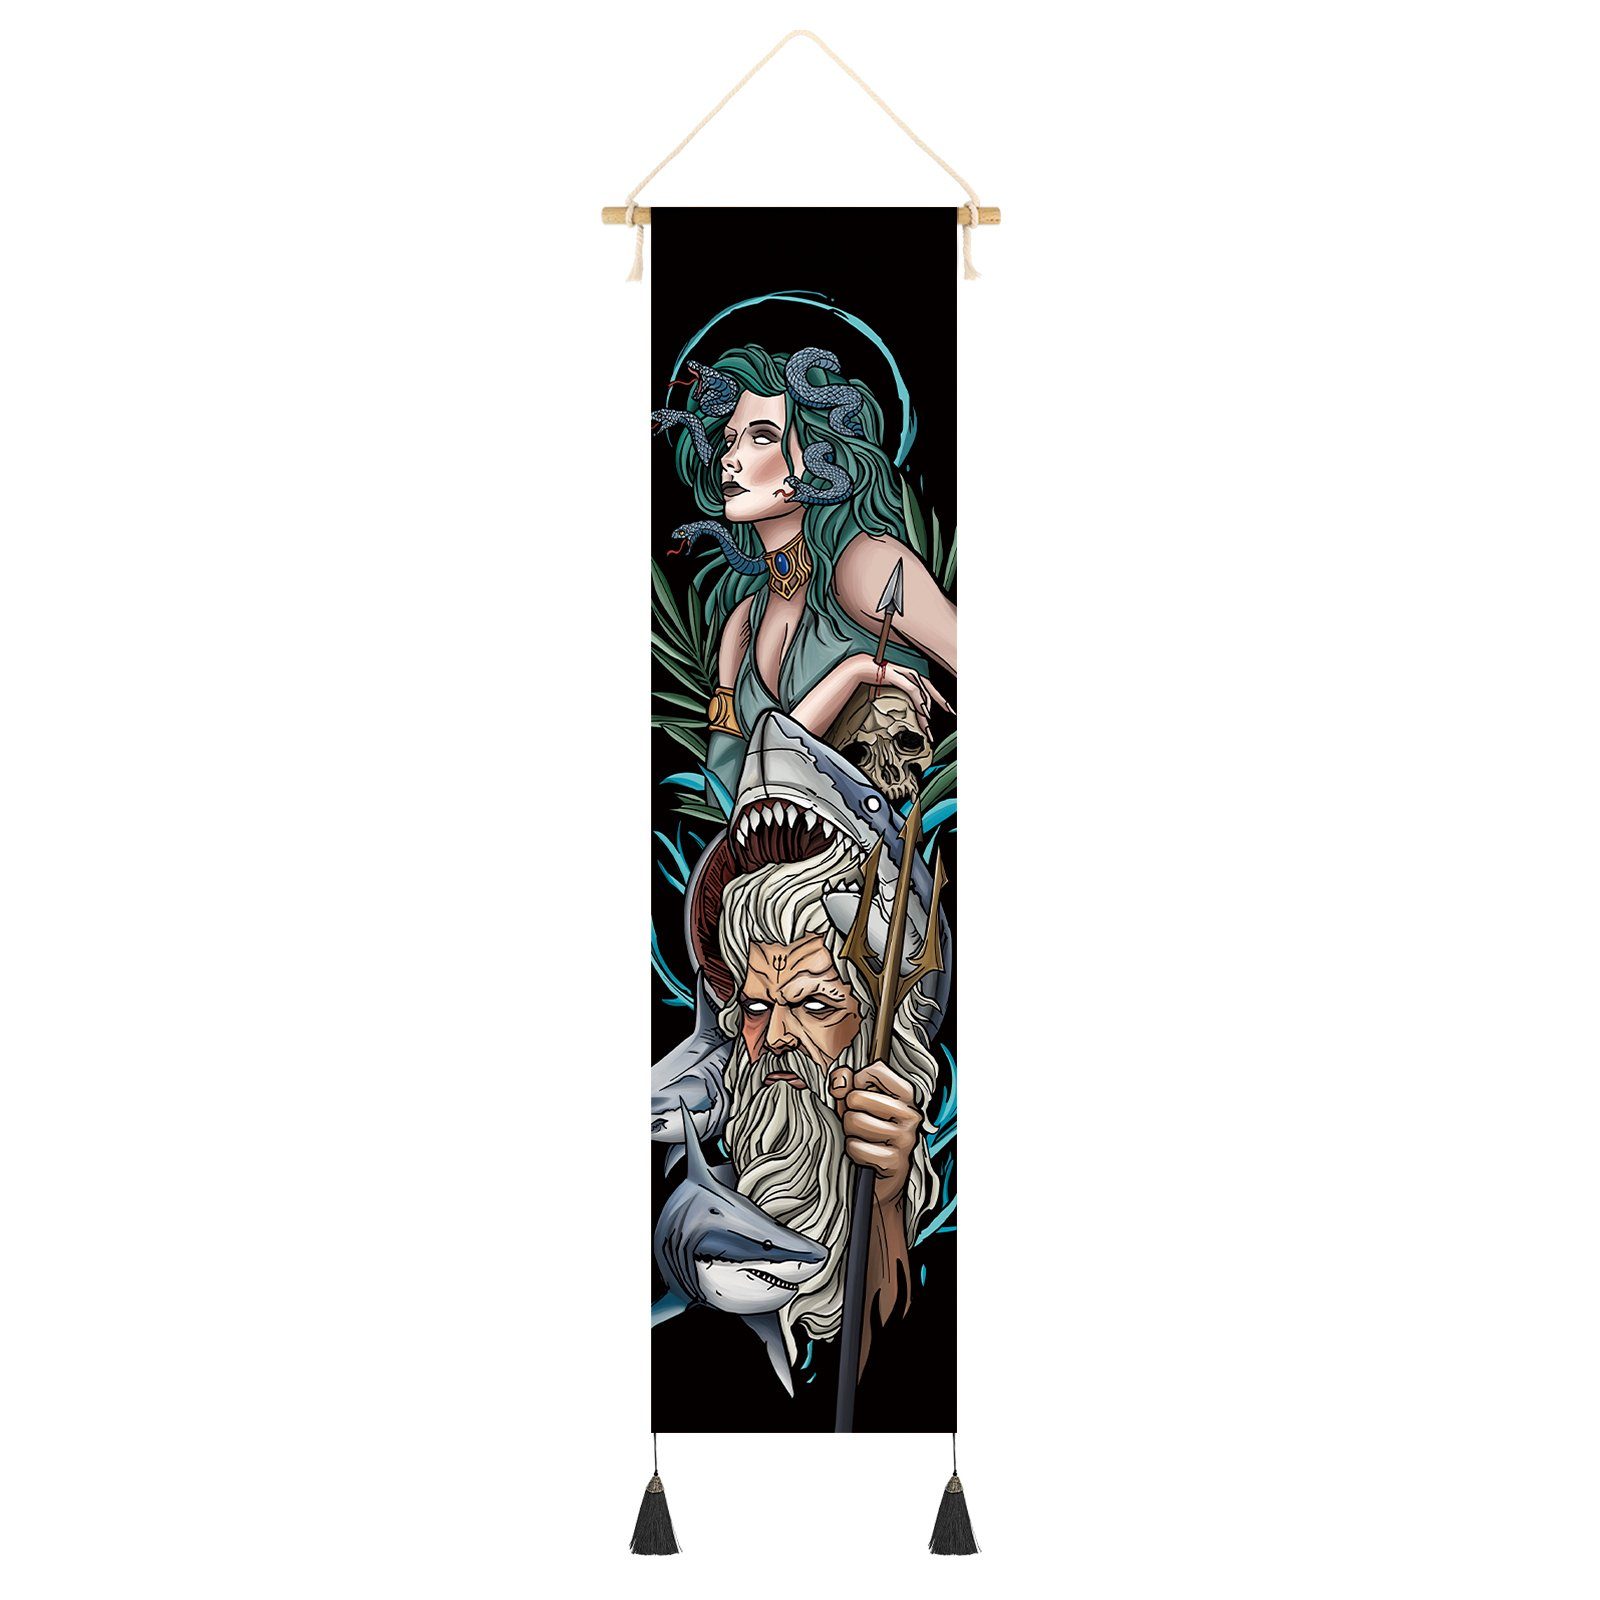 GalaxyCat Poster Hochwertiges Griechische Götter Rollbild aus Stoff, Mythologie Kakemo, Poseidon & Medusa, Poseidon & Medusa Rollbild / Wallscroll